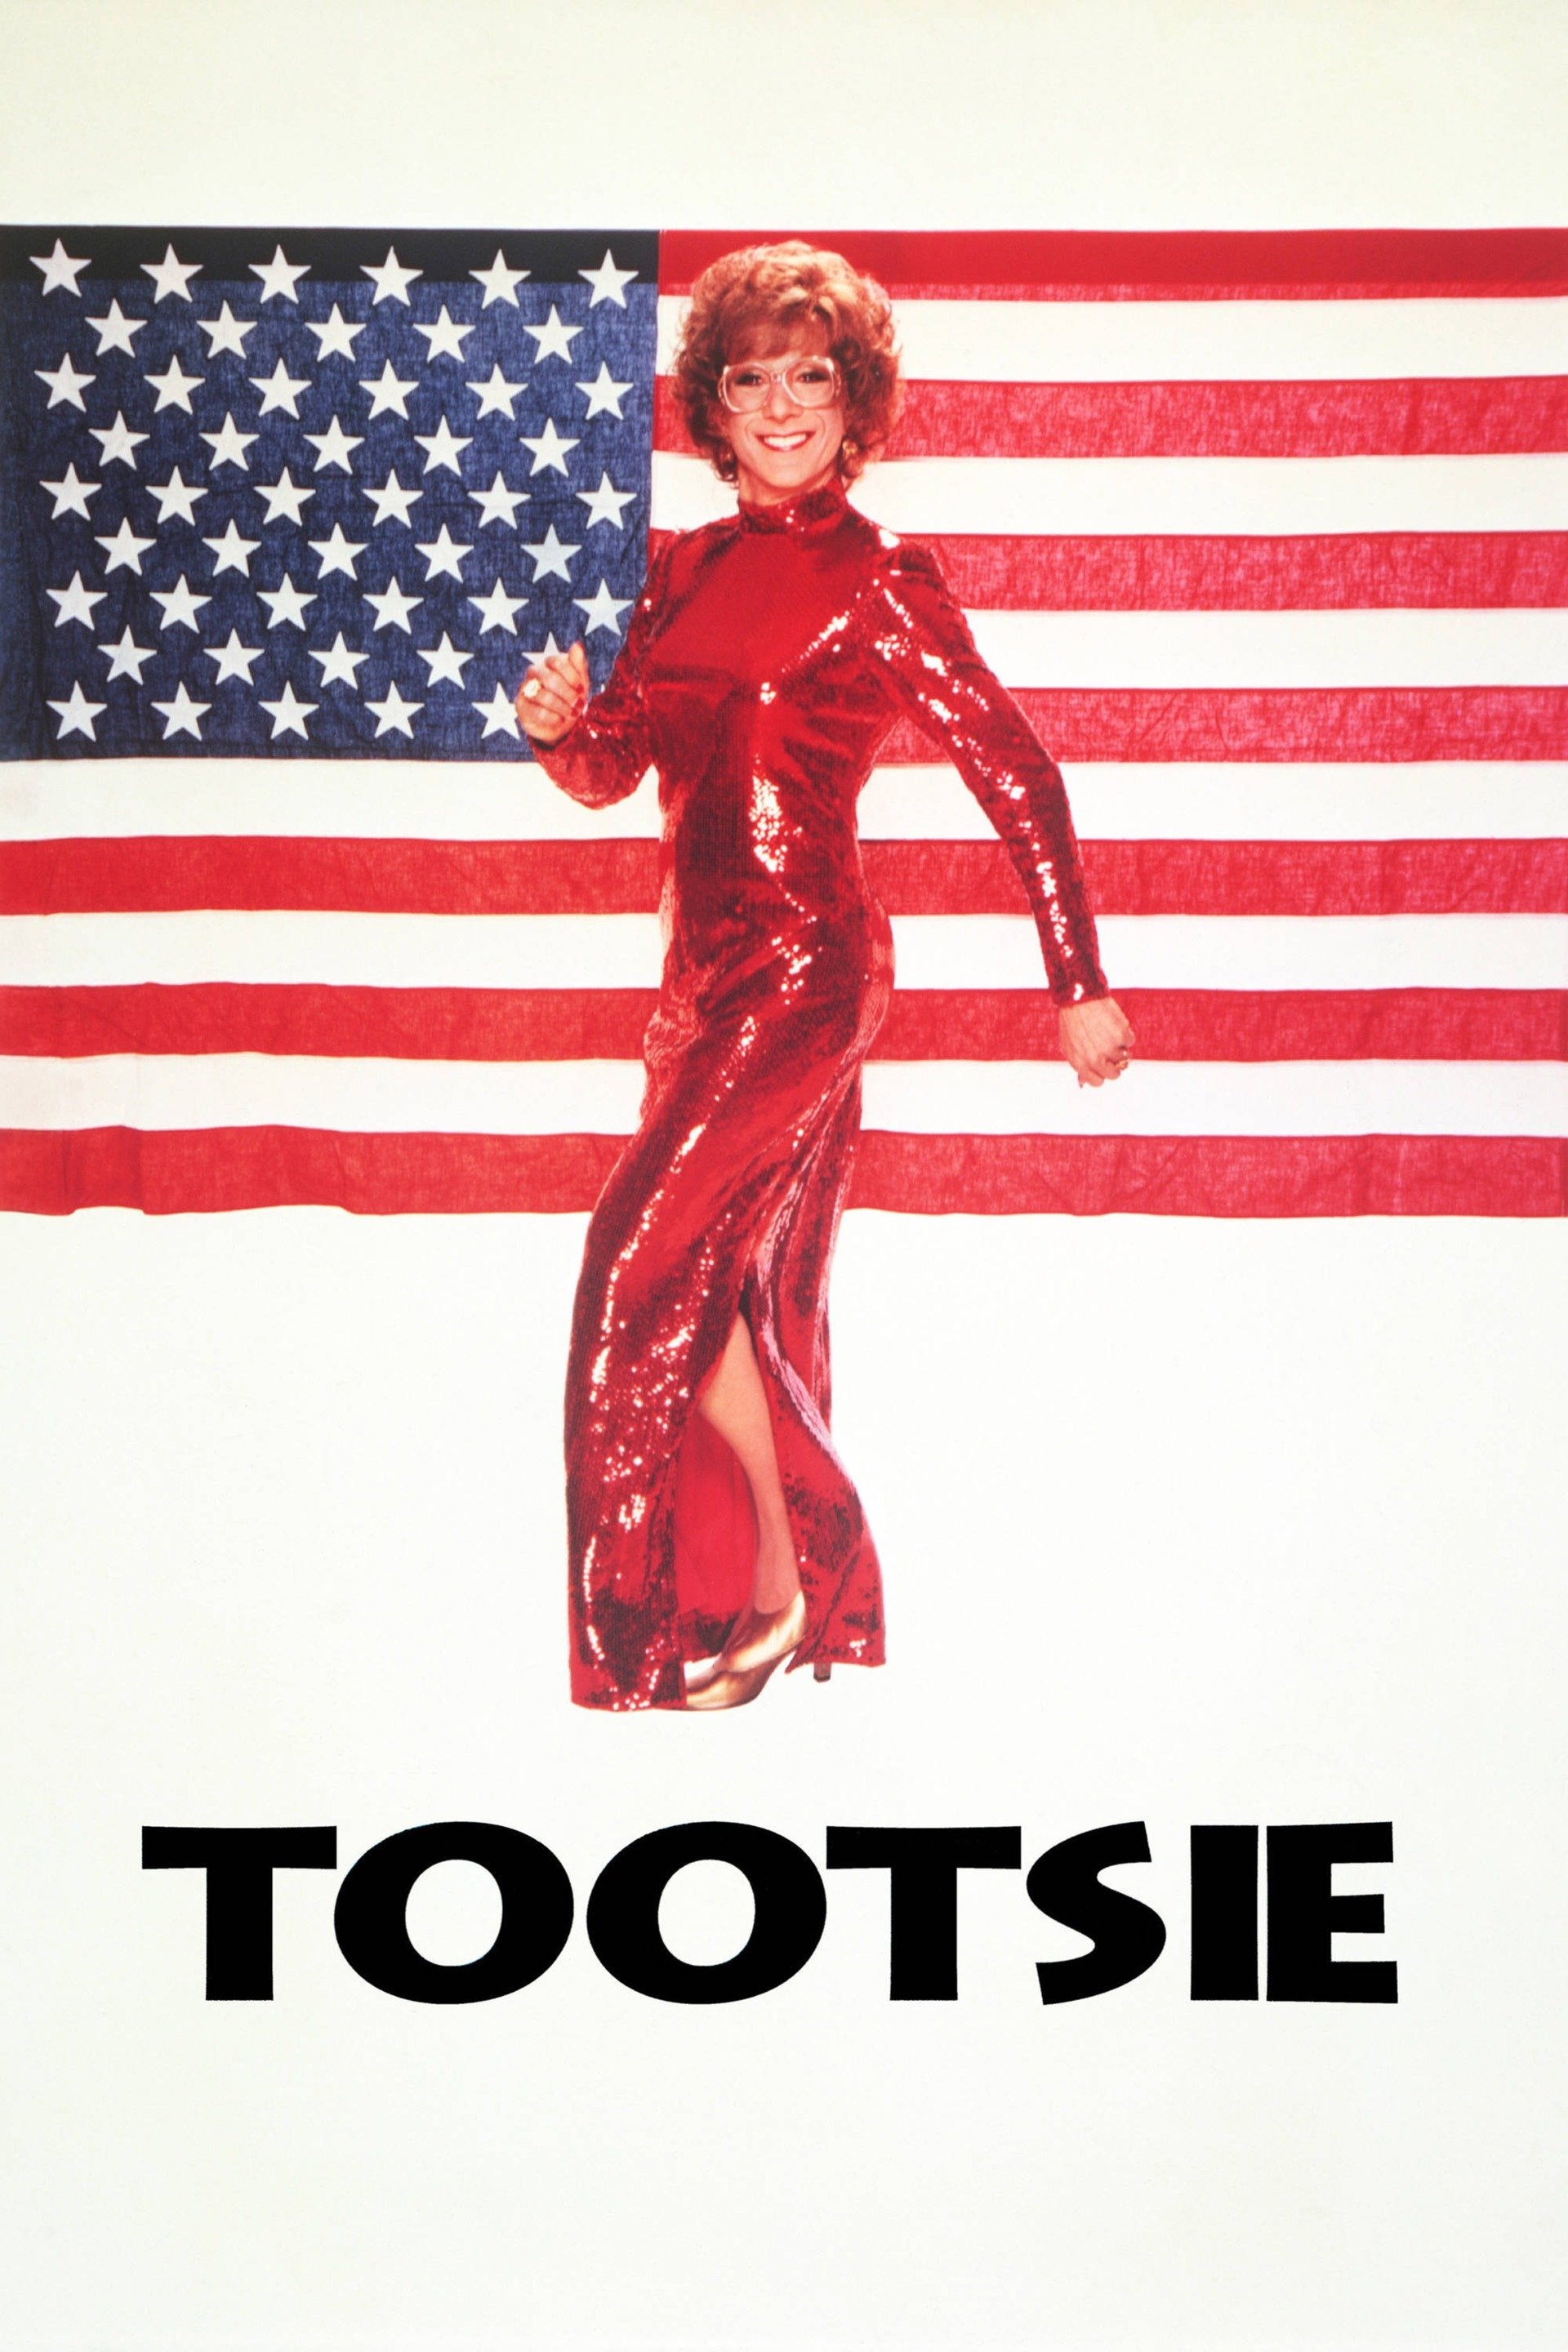 Tootsie 1982, Full movie online, Plex streaming, Watch now, 1920x2880 HD Handy